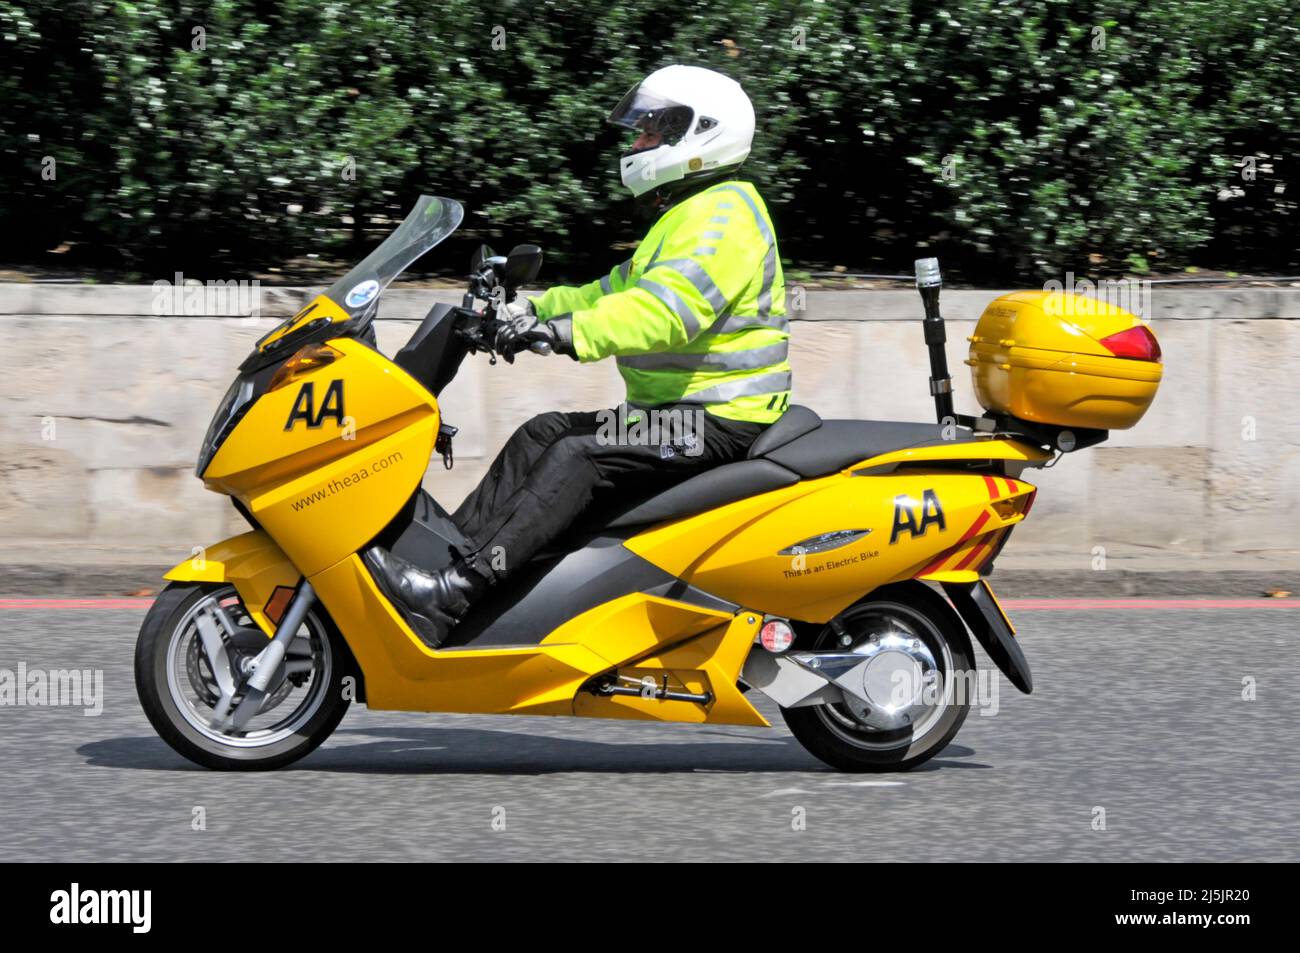 Vista lateral AA patrolman chaqueta de alta visibilidad montar amarillo moto eléctrica dar a los miembros de asistencia en carretera en las congestionadas calles de Londres Inglaterra Reino Unido Foto de stock